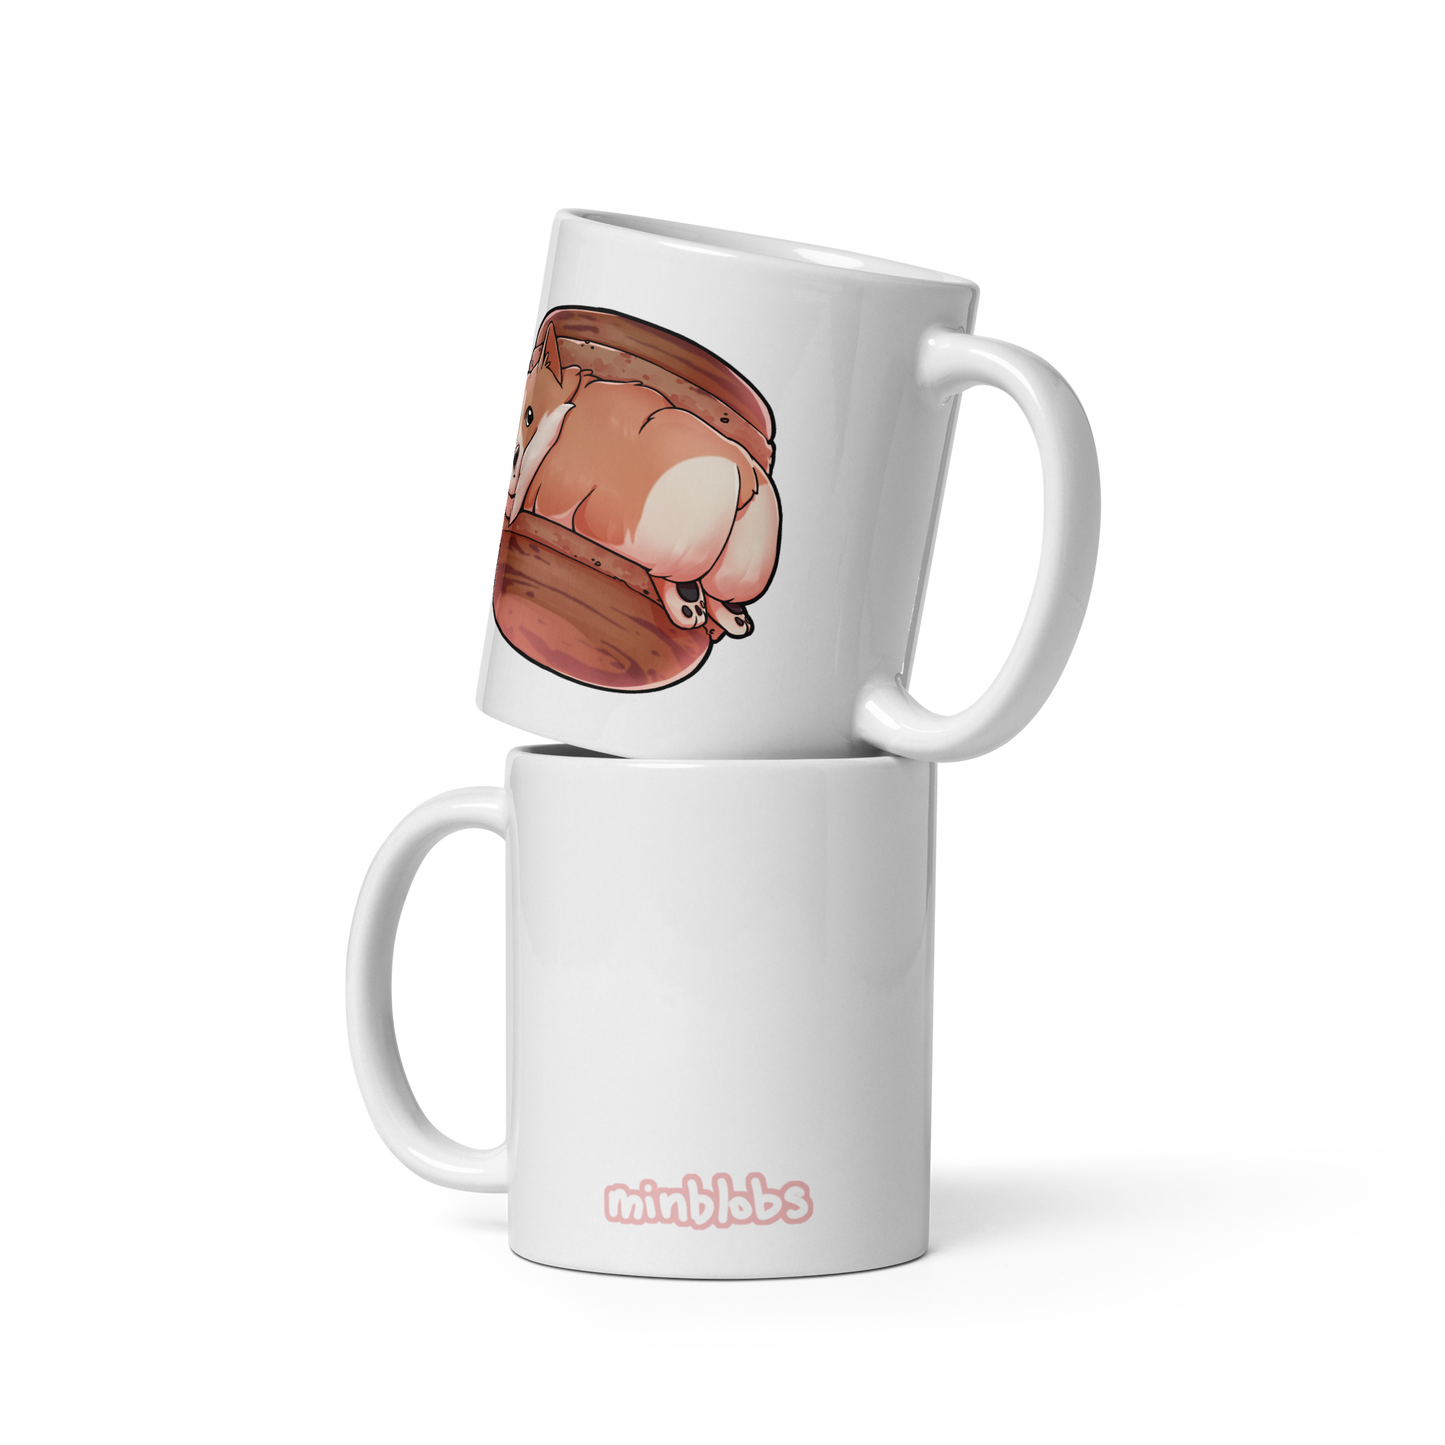 ADD ON: Custom Minblobs Mug